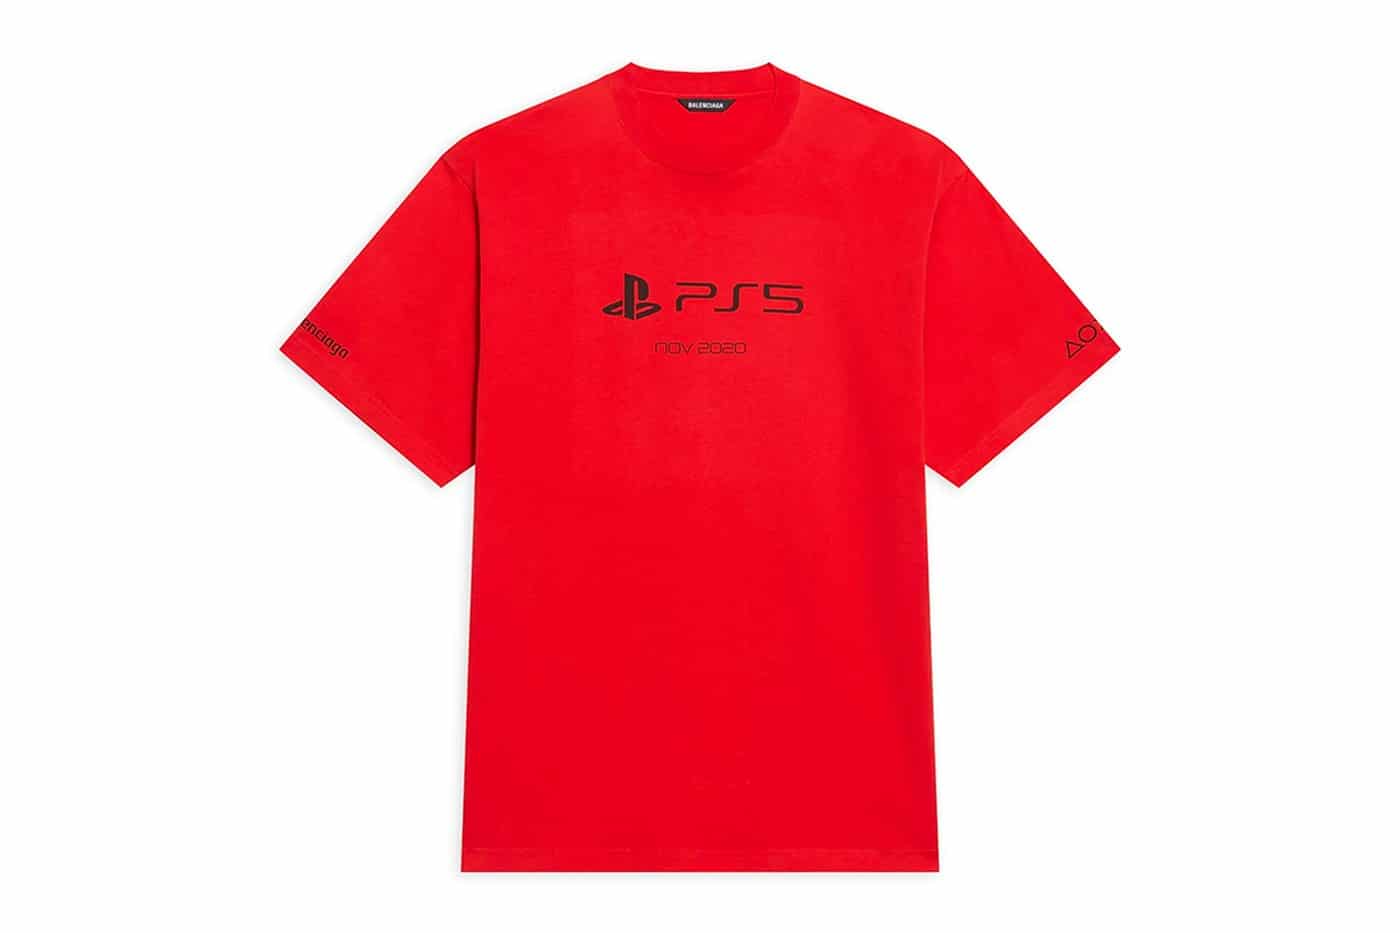 balenciaga-playstation-5-collection-shirt-red-1